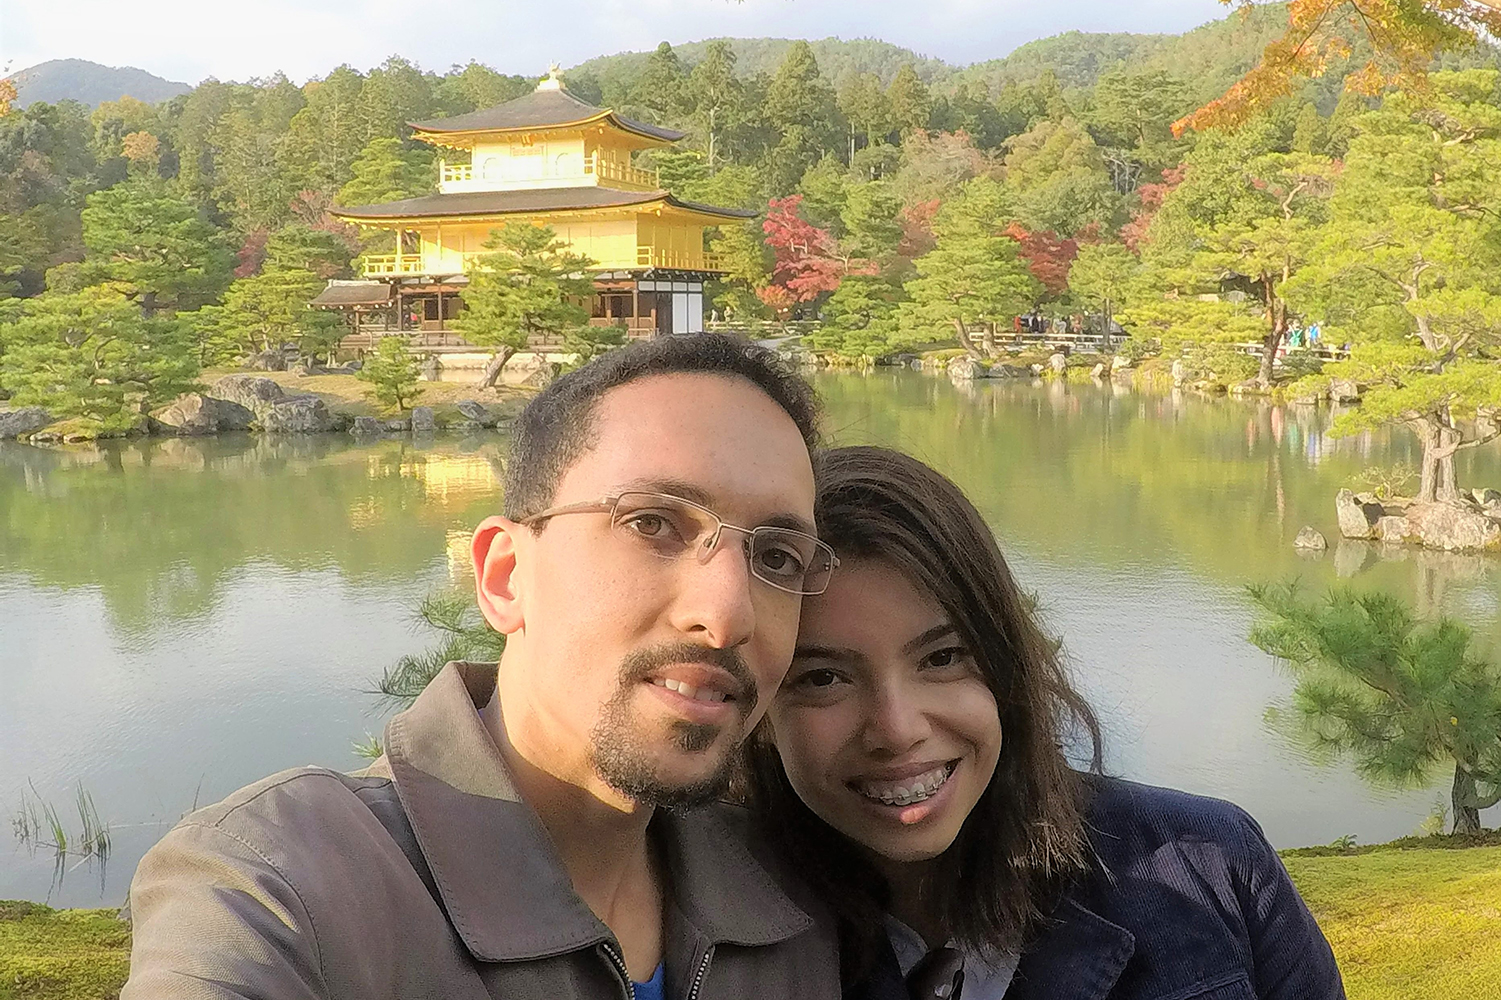 新婚旅行で初めて日本を訪れ、日本への関心が高まった